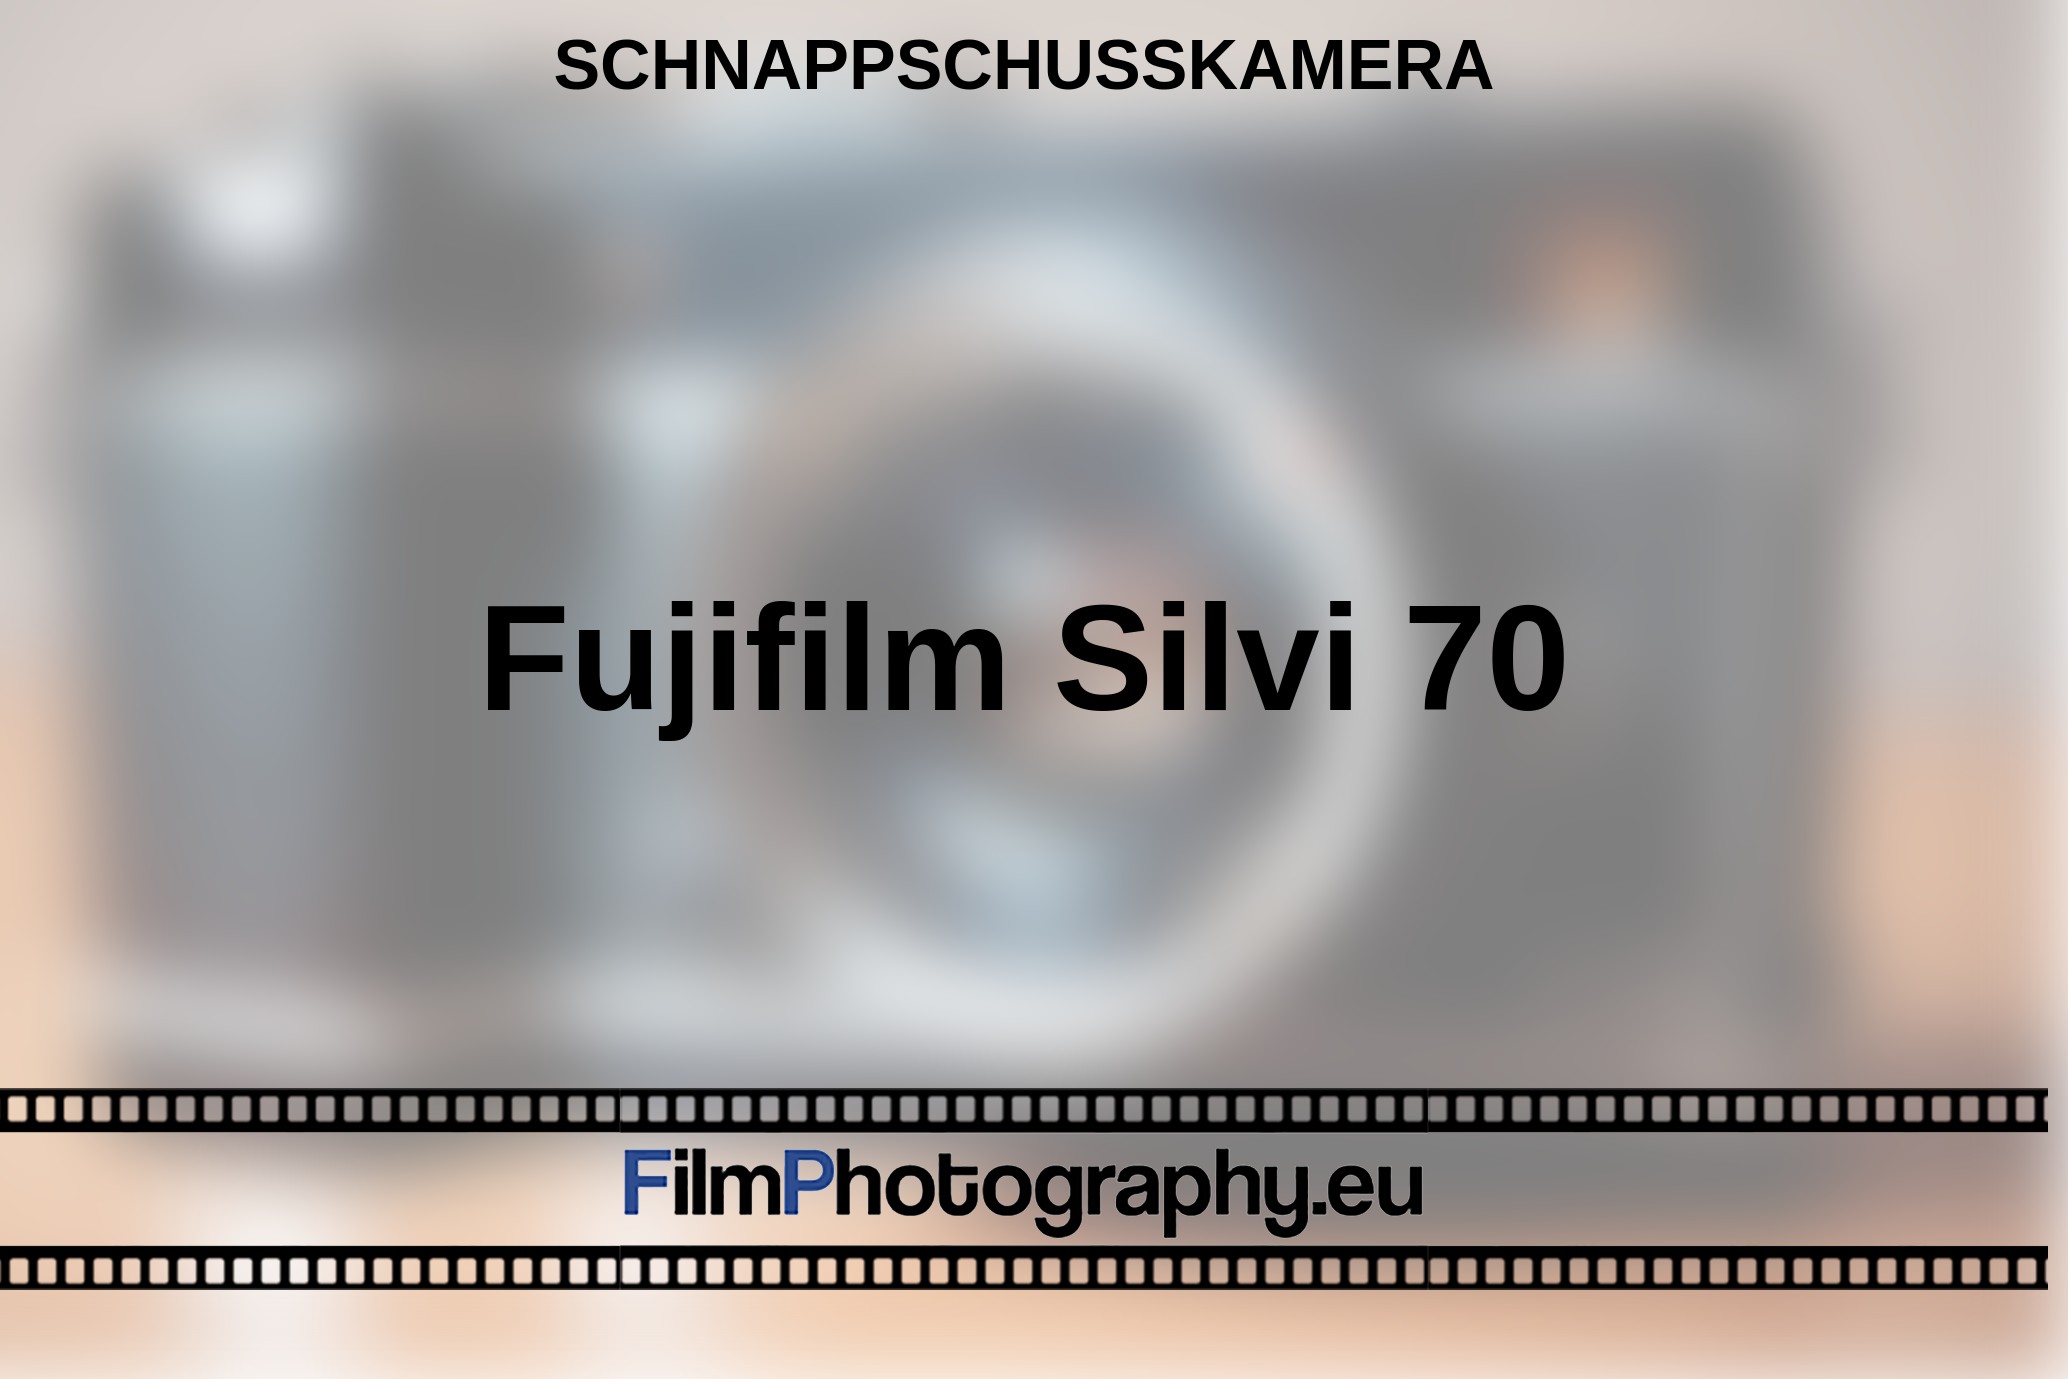 Fujifilm-Silvi-70-Schnappschusskamera-bnv.jpg